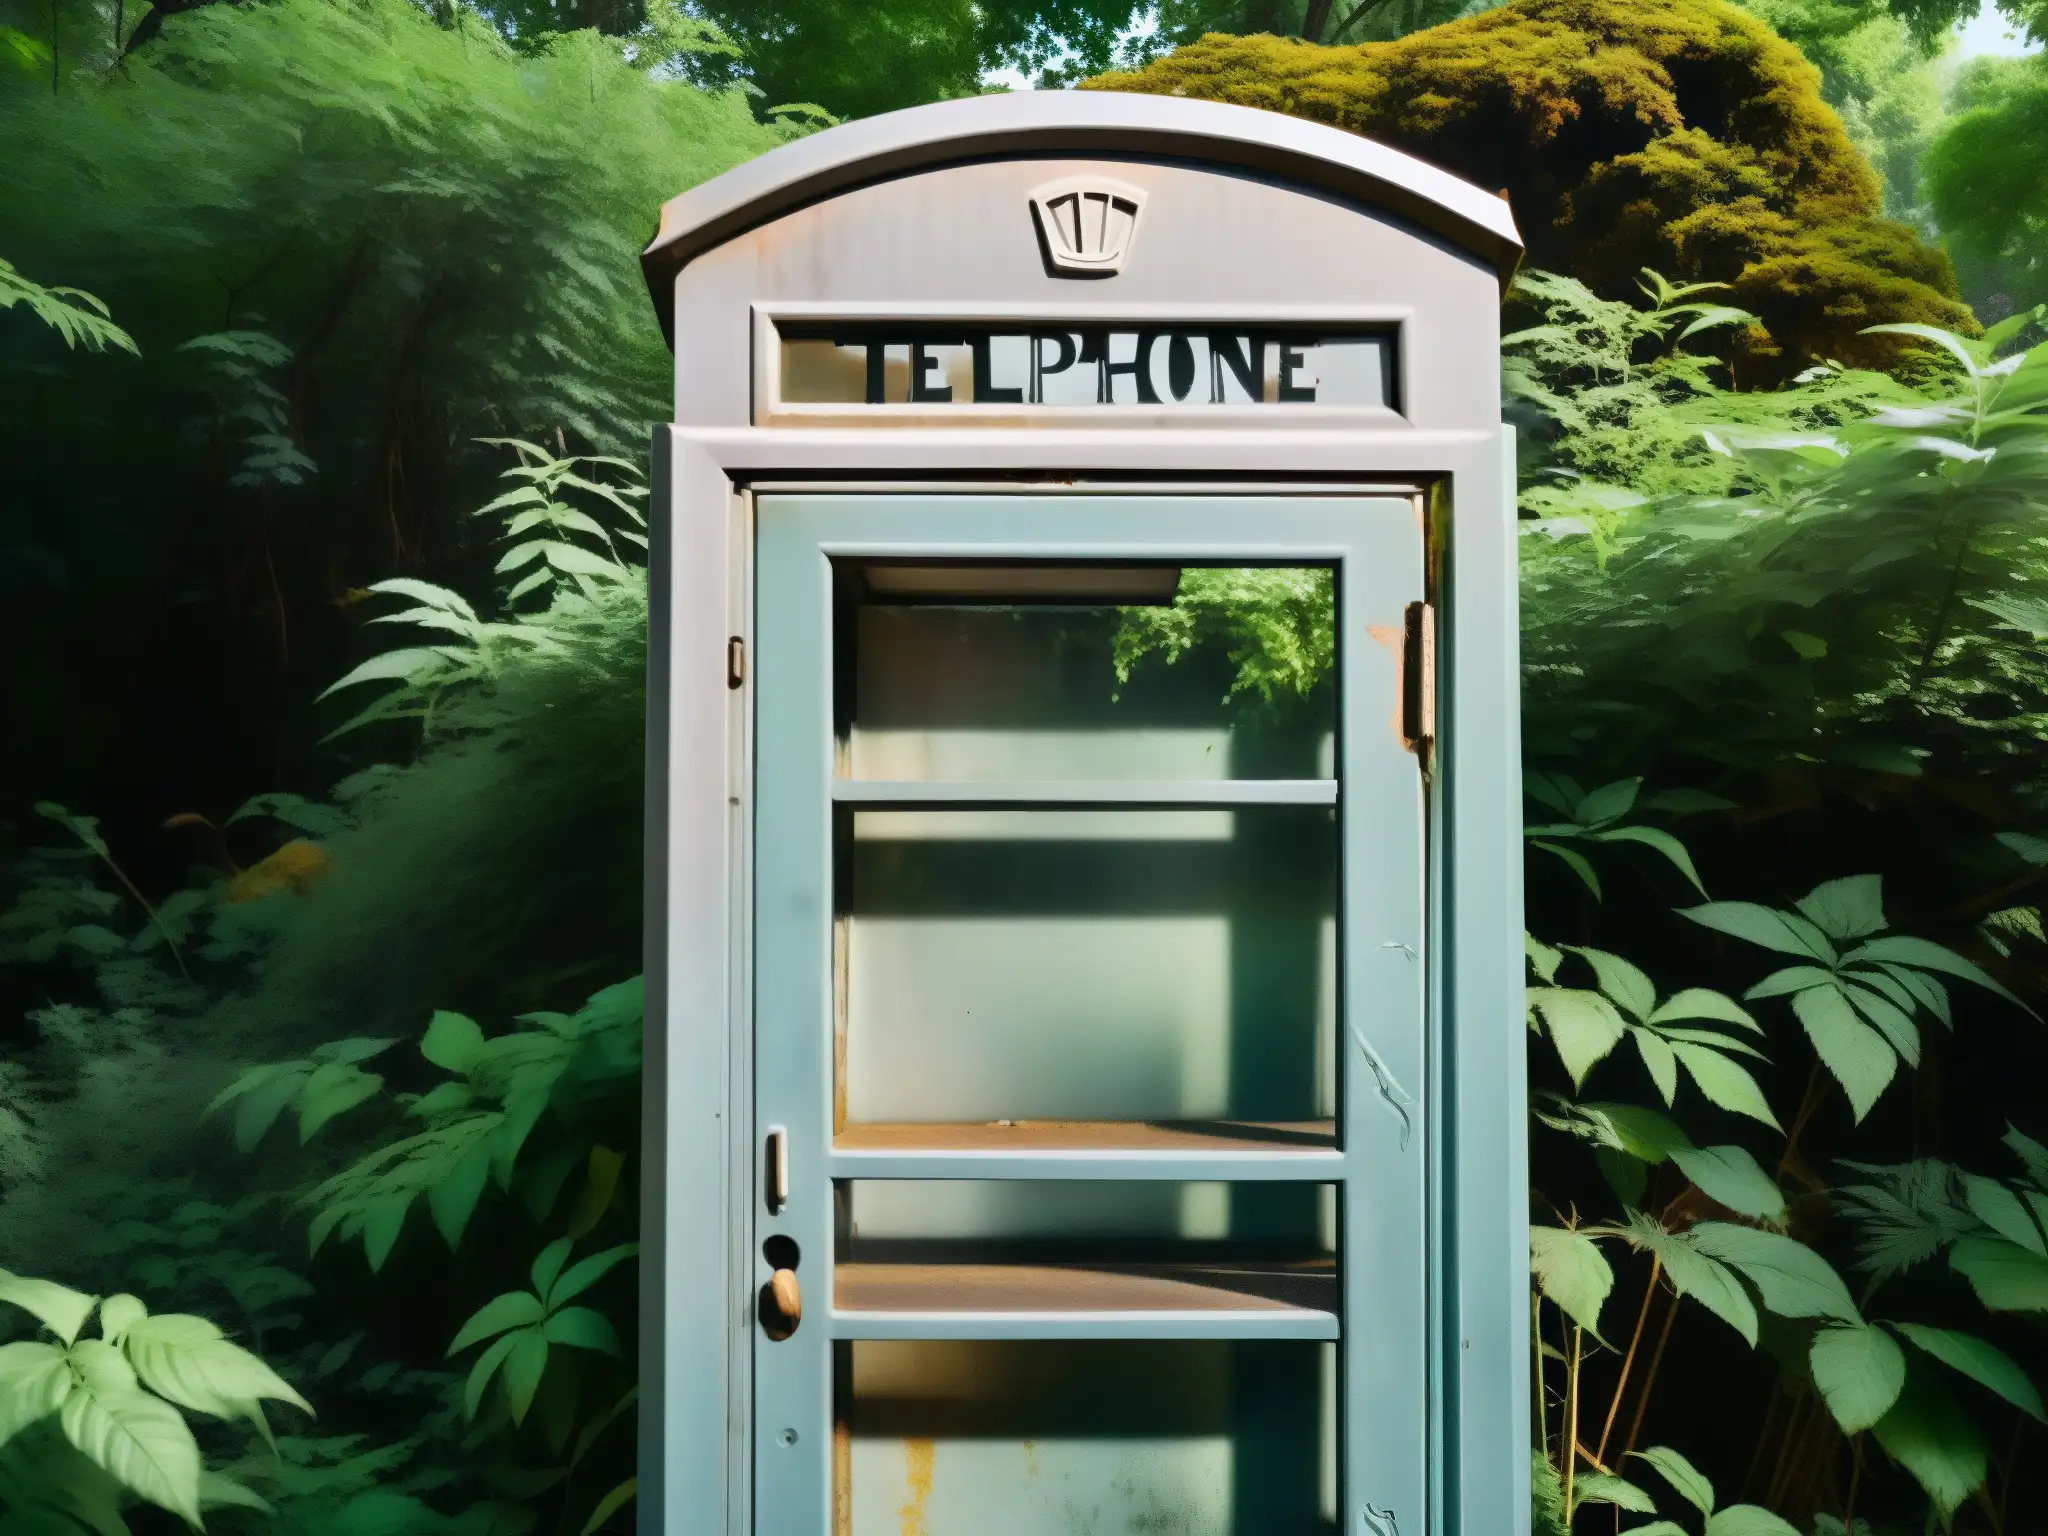 Una cabina telefónica antigua cubierta de graffiti y rodeada de vegetación, con un aire de misterio